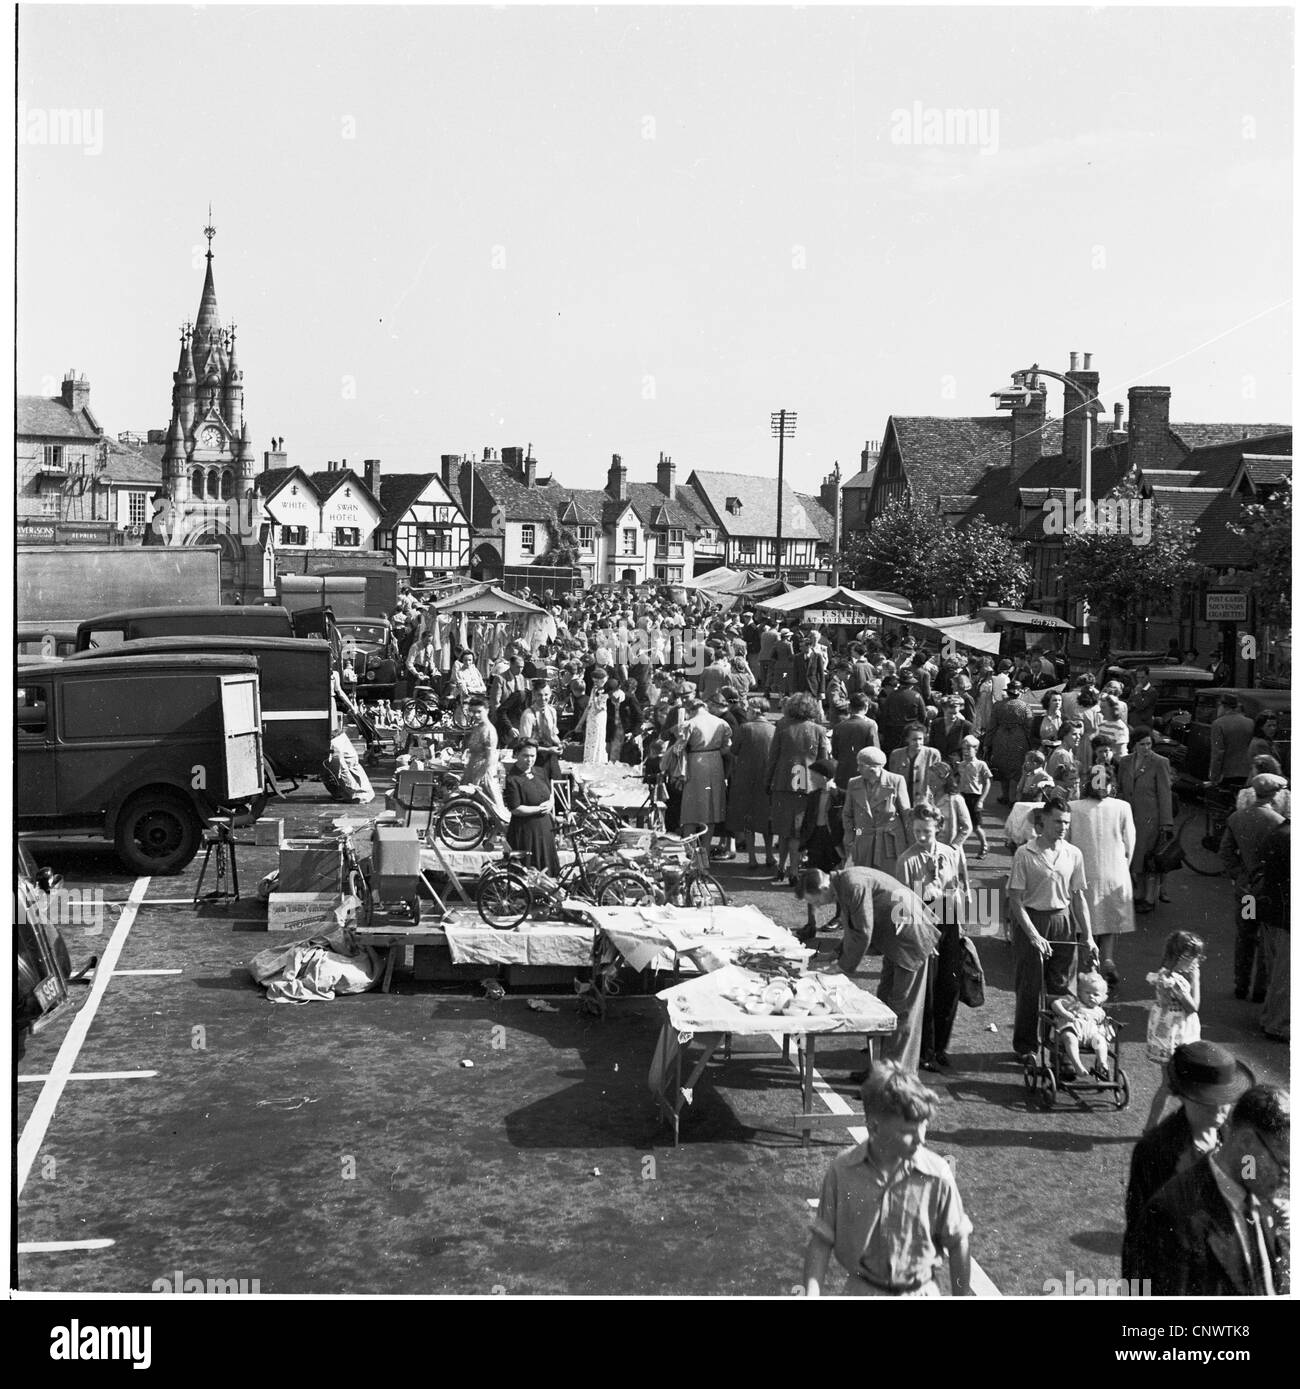 Geschichtsbild from1950s, mit einem Flohmarkt in der Stadt Stratford, Geburtsort von William Shakespeare. Stockfoto